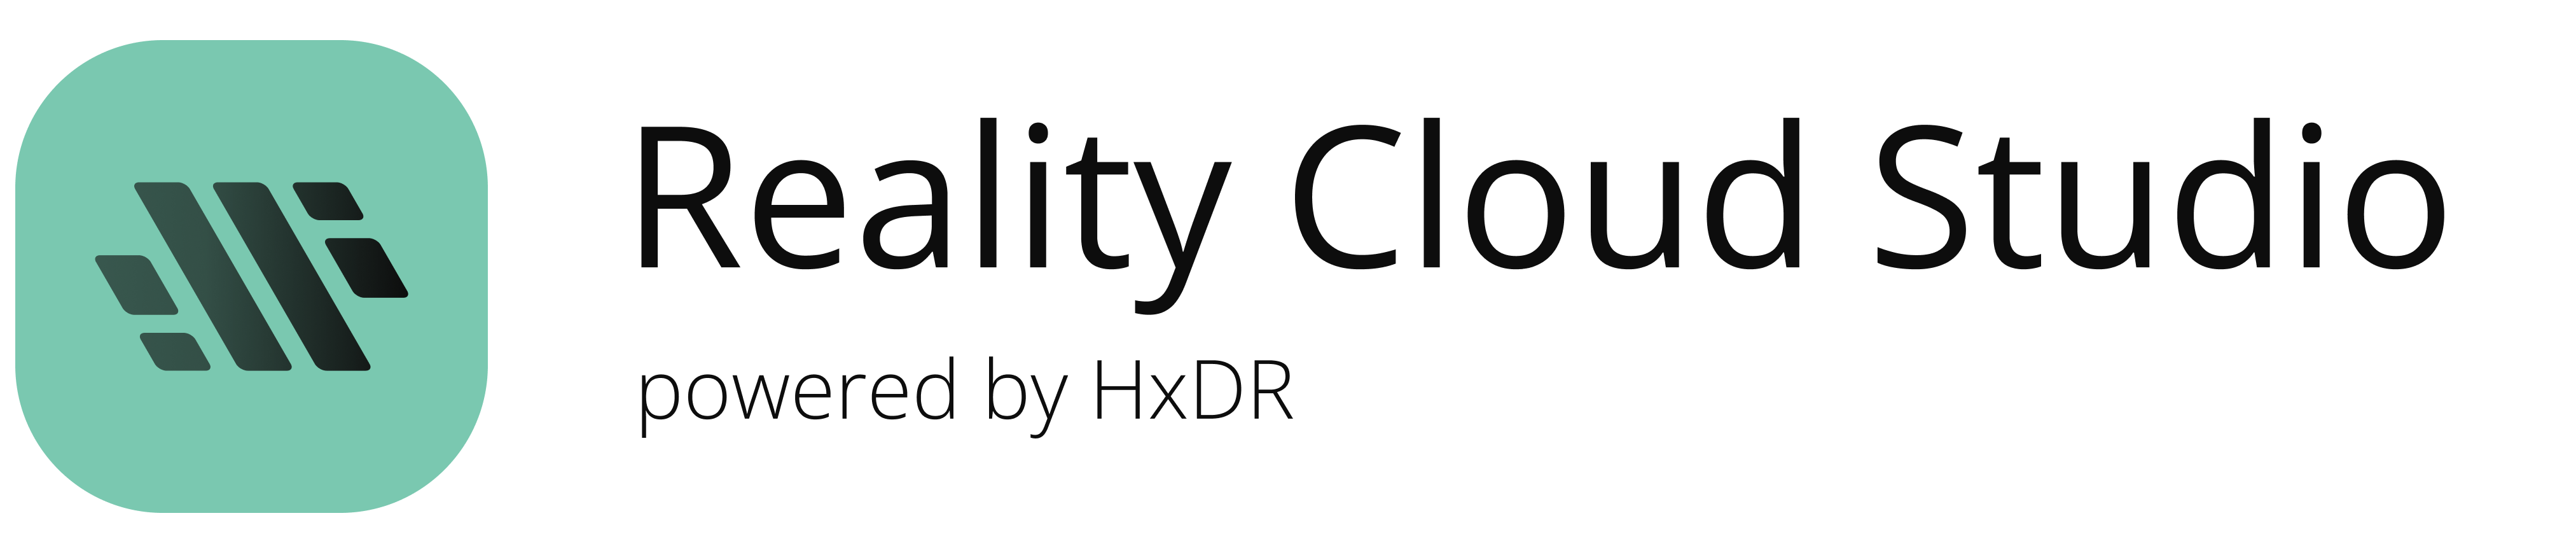 Logo Reality Cloud Studio, sur HxDR